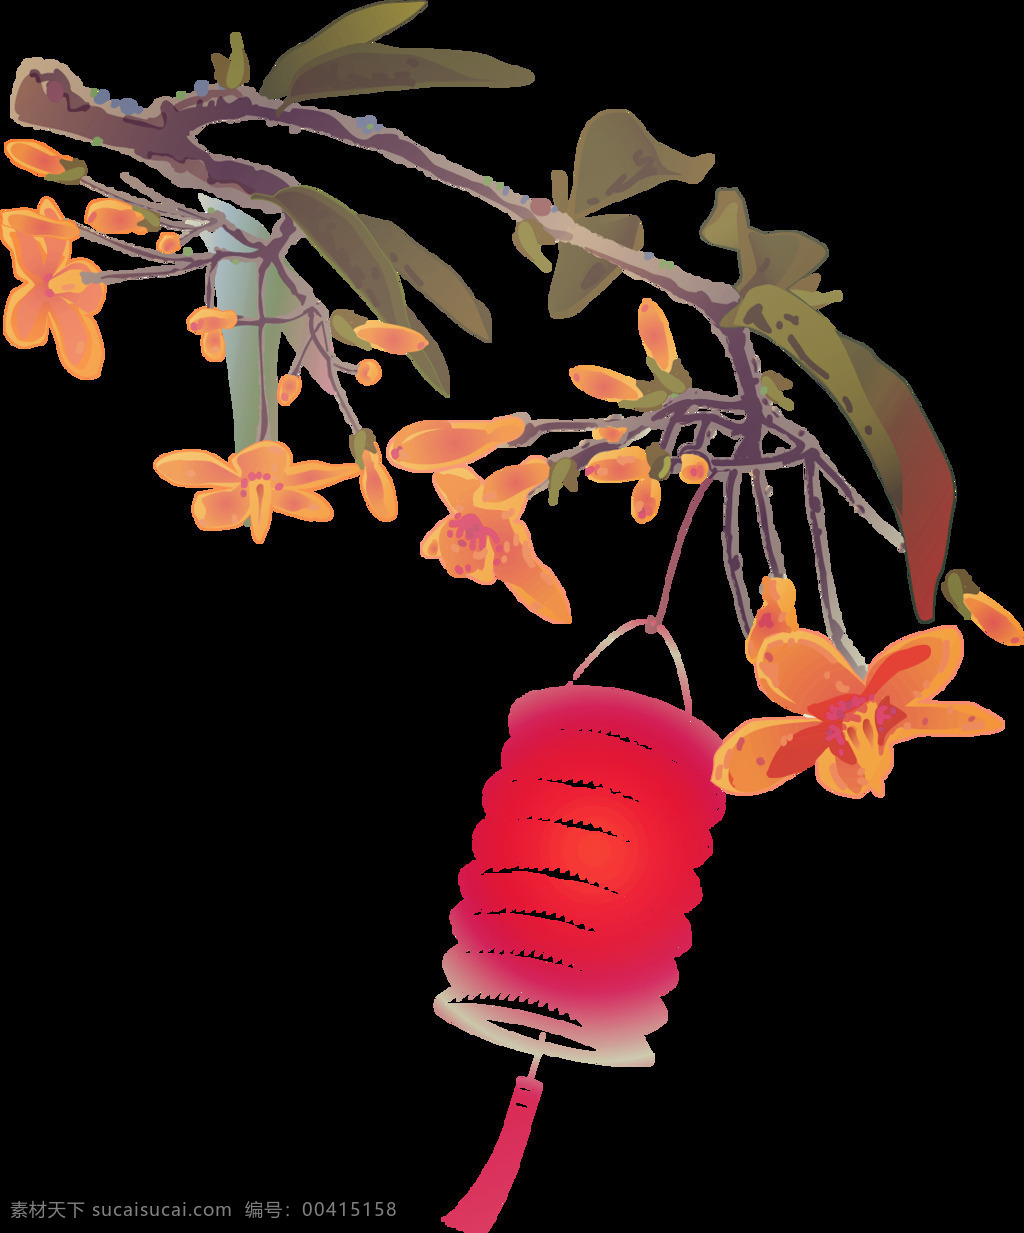 清新 玫 红色 折叠 灯笼 节日 元素 褐色树枝 黄色花朵 节日元素 折叠灯笼